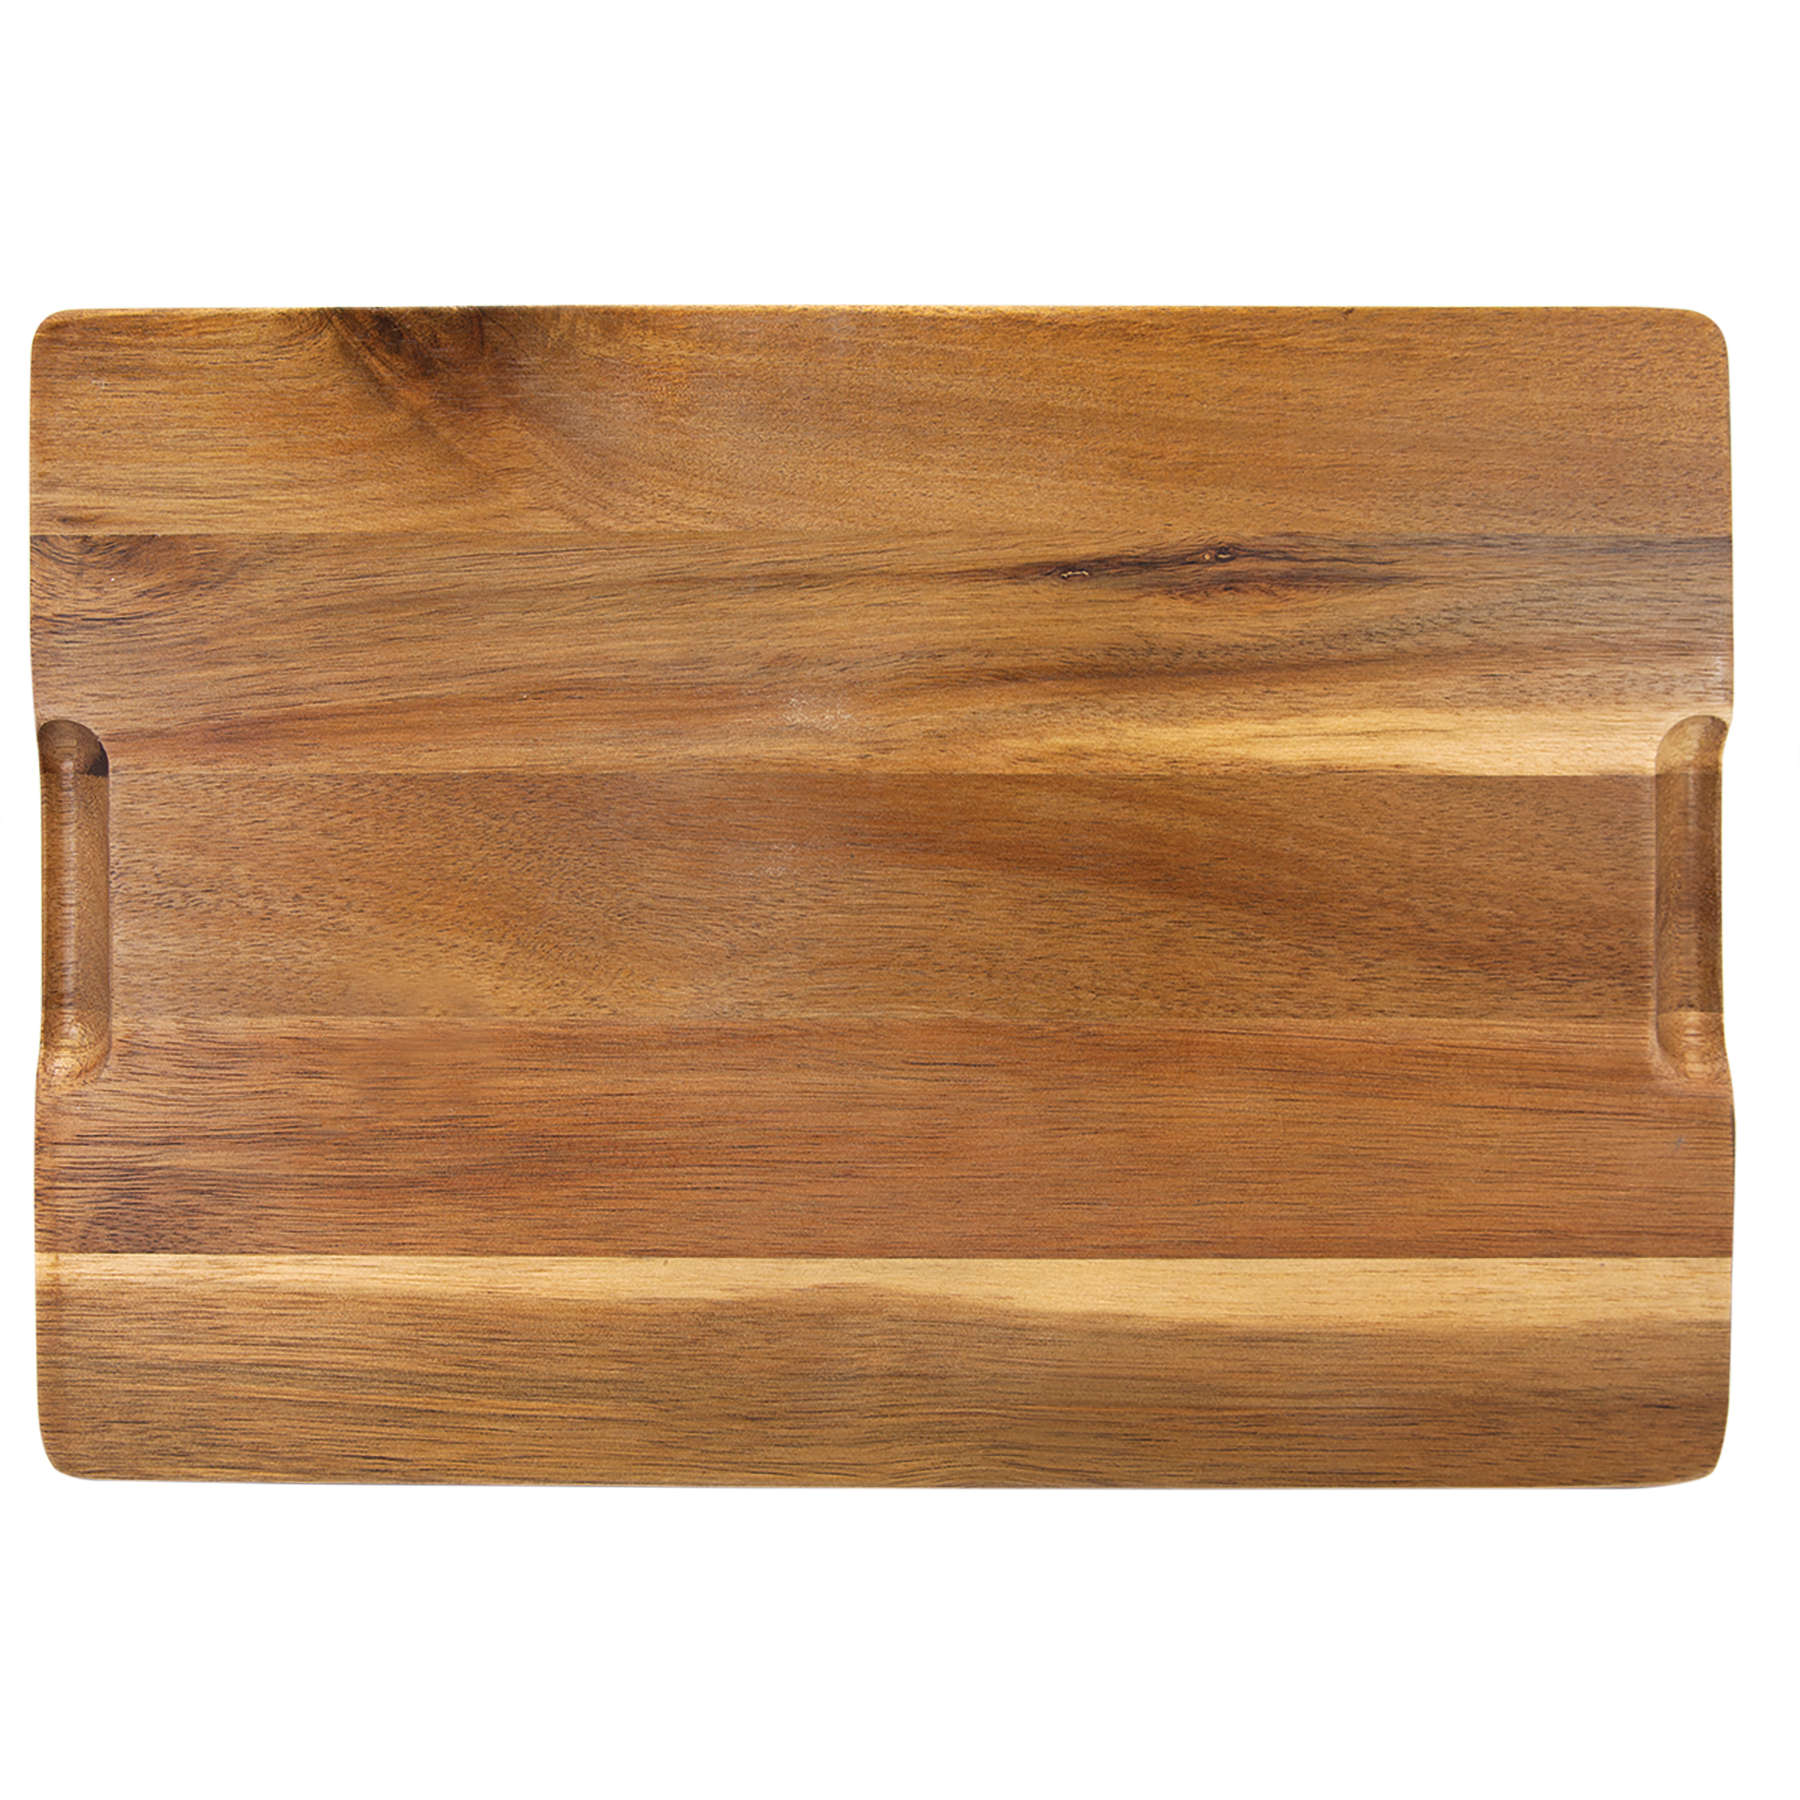 13" x 9" Acacia Wood/Slate Serving Board